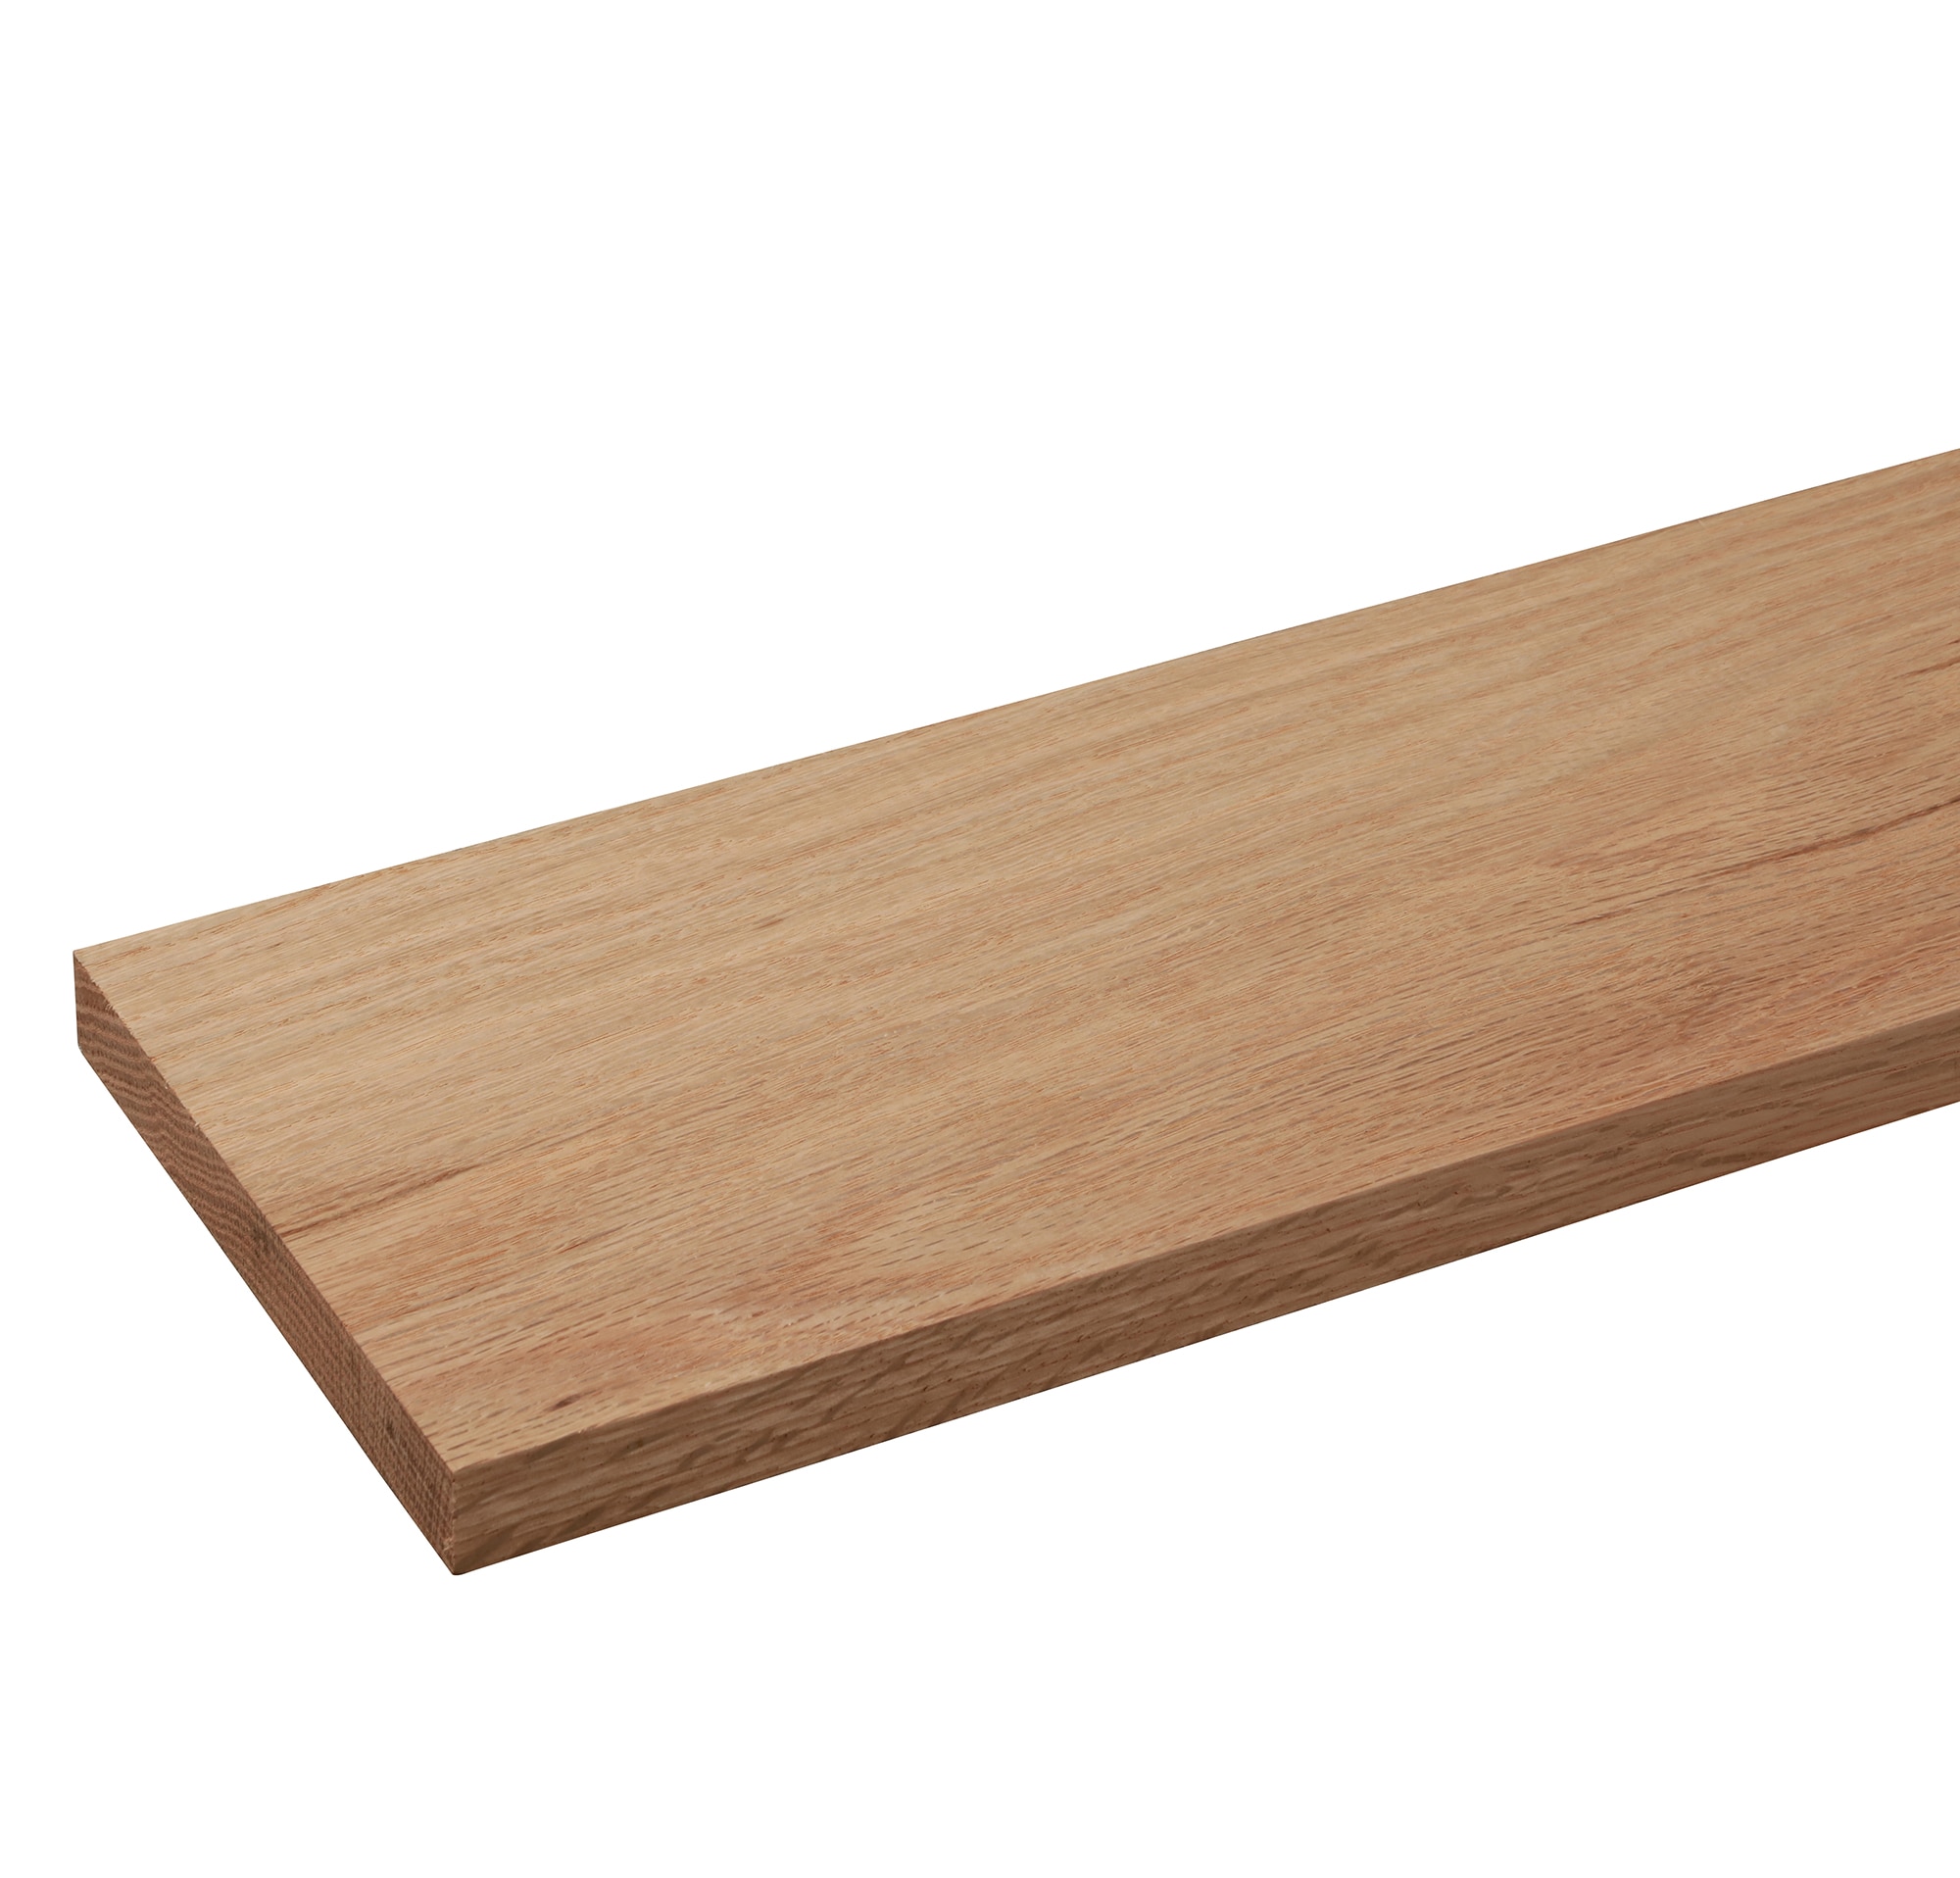 RELIABILT 1/4-in x 6-in x 4-ft Unfinished Oak Board in the